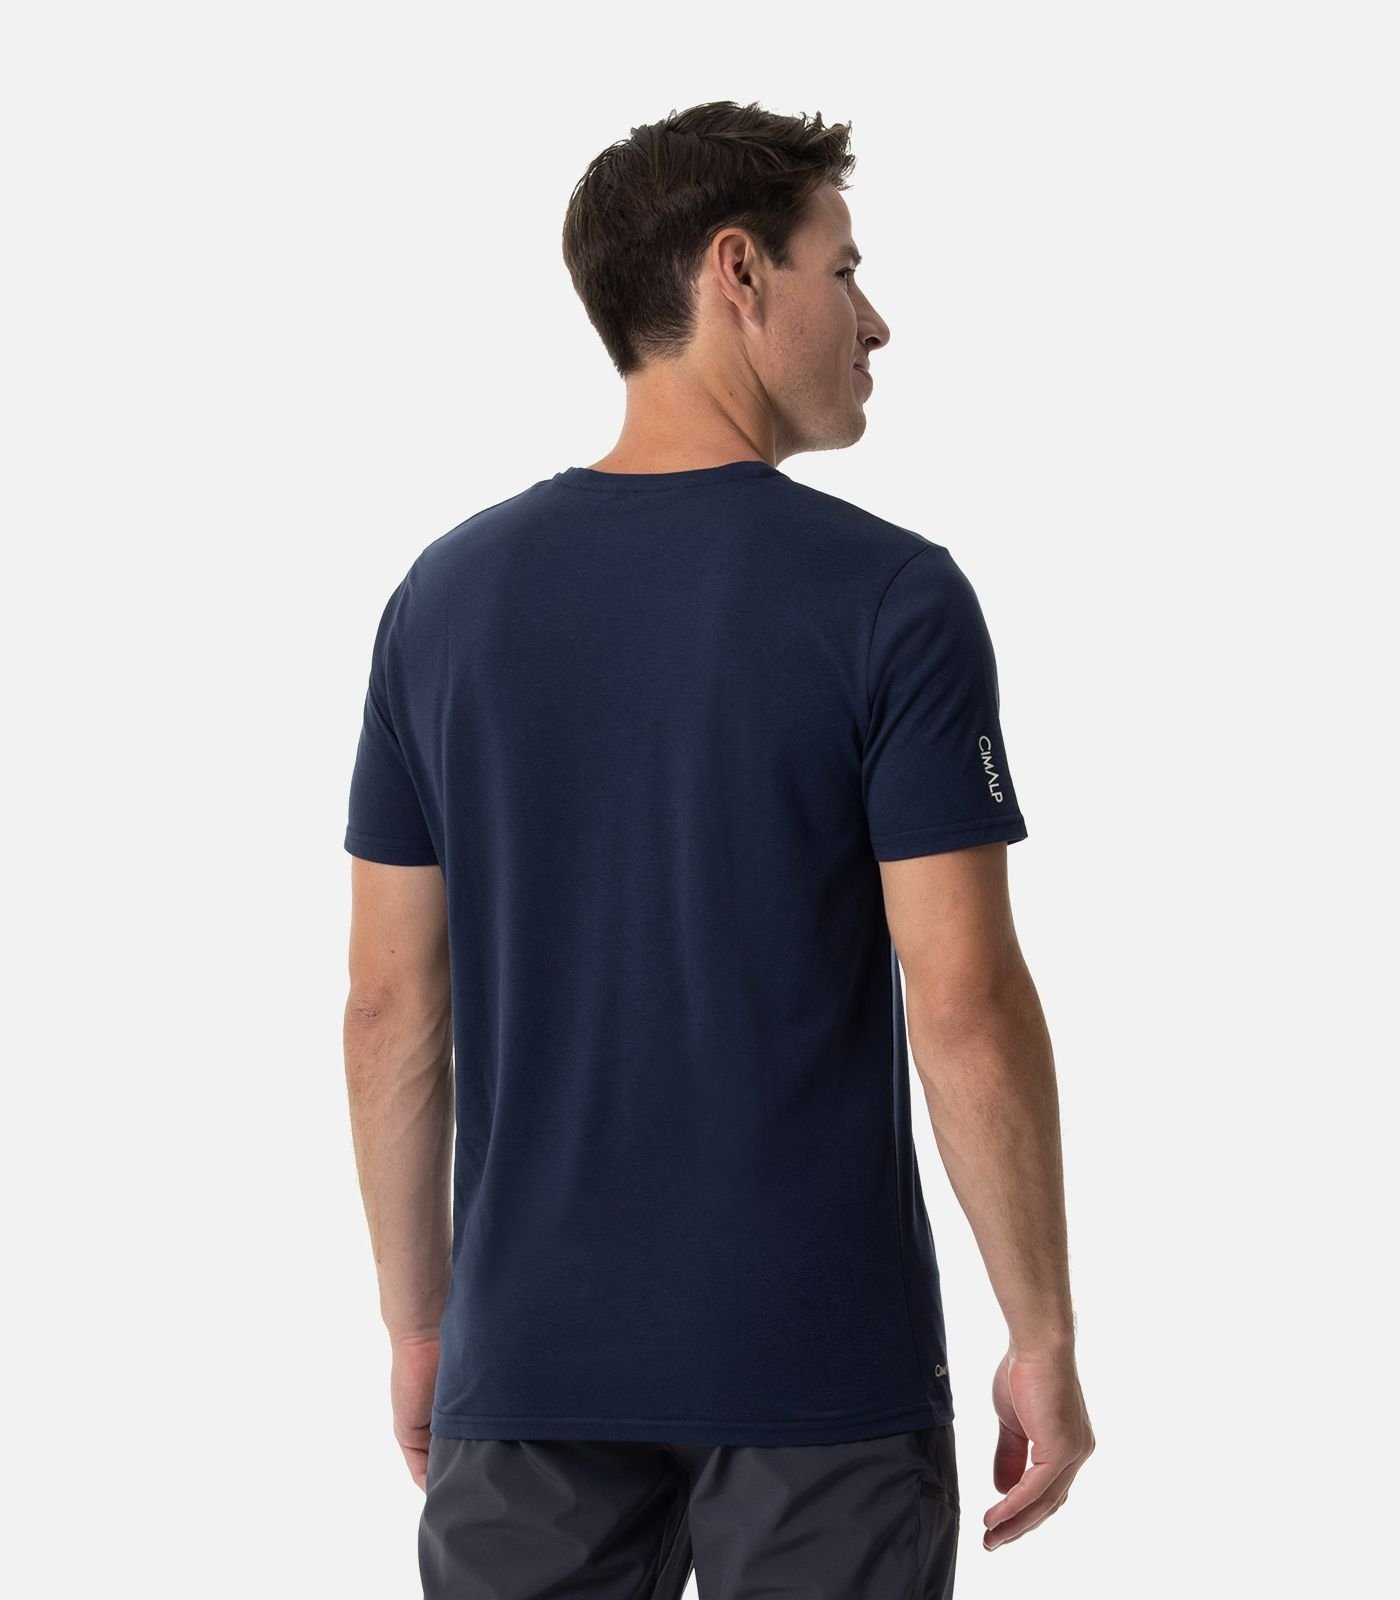 Tee-shirt léger coton/polyester